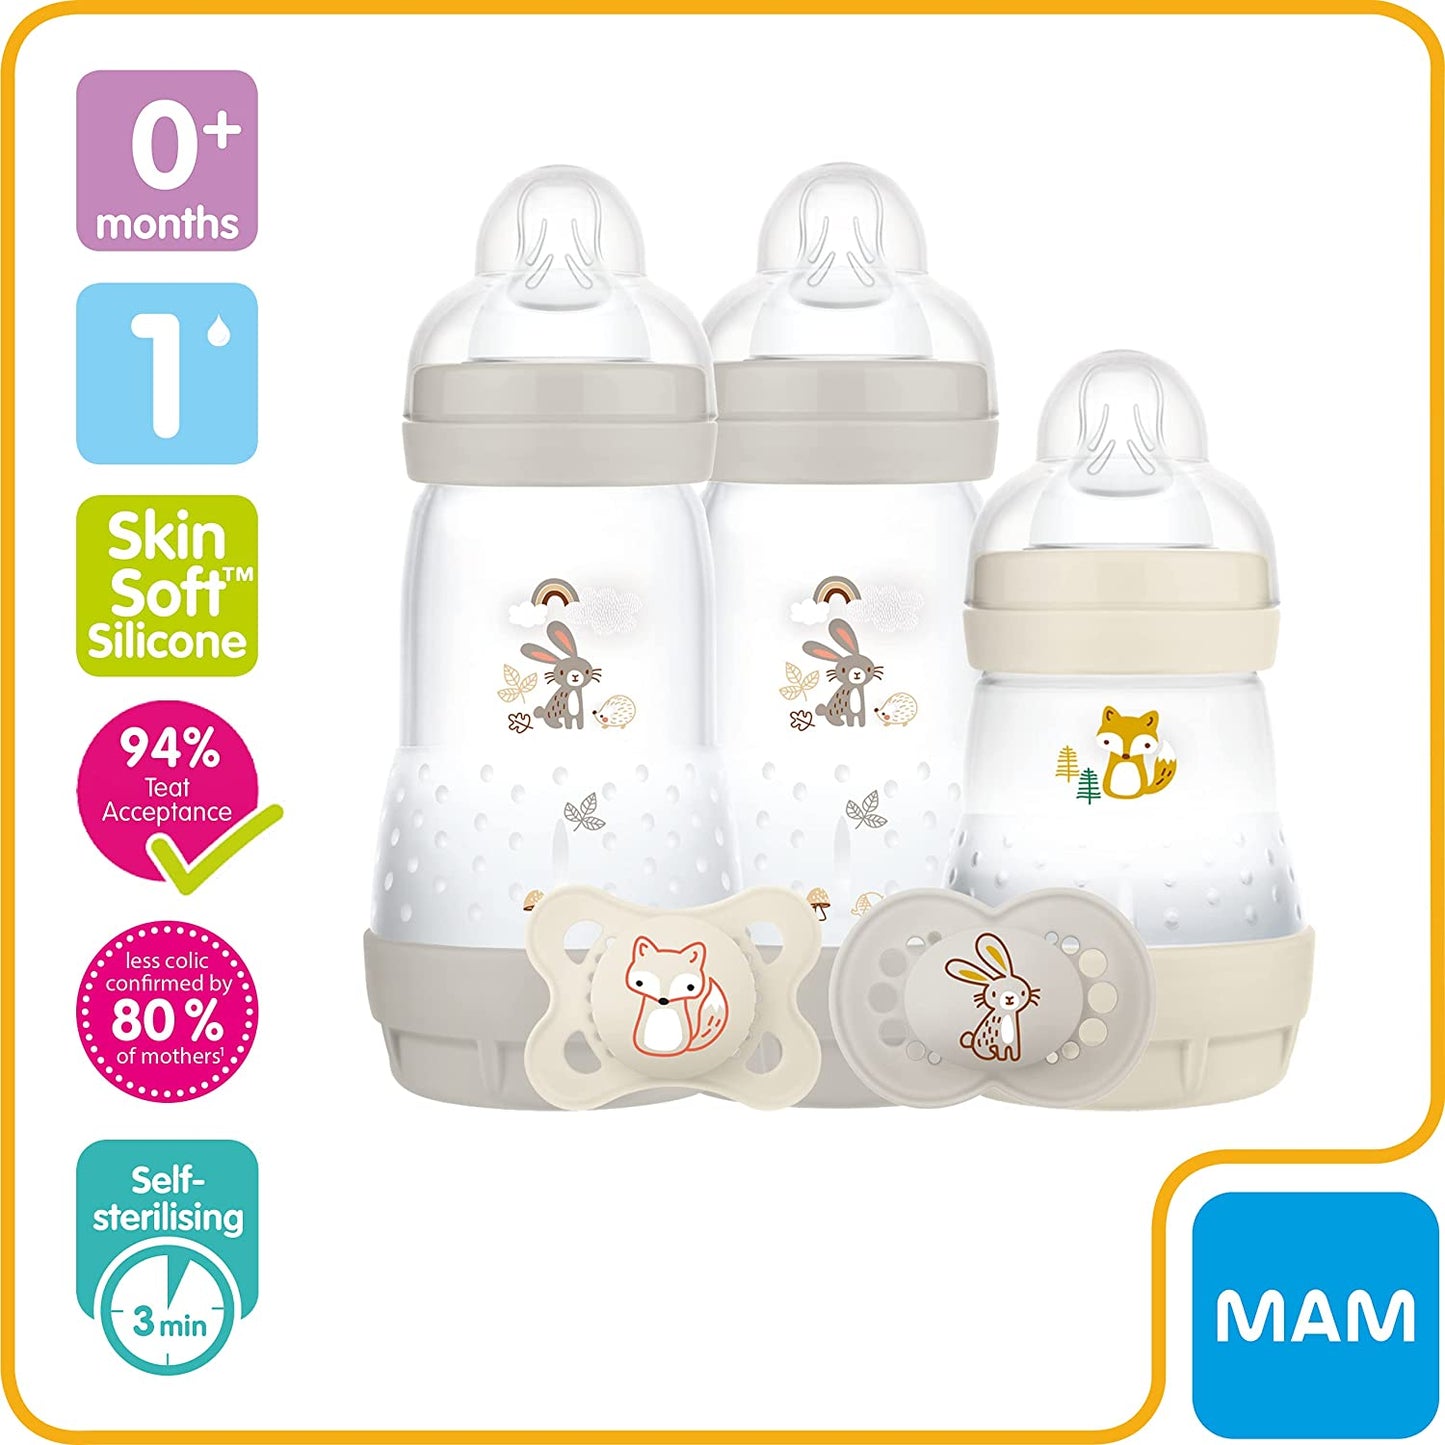 MAM Easy Start Mamadeiras e Chupeta para Recém-Nascidos - Kit com 5 itens